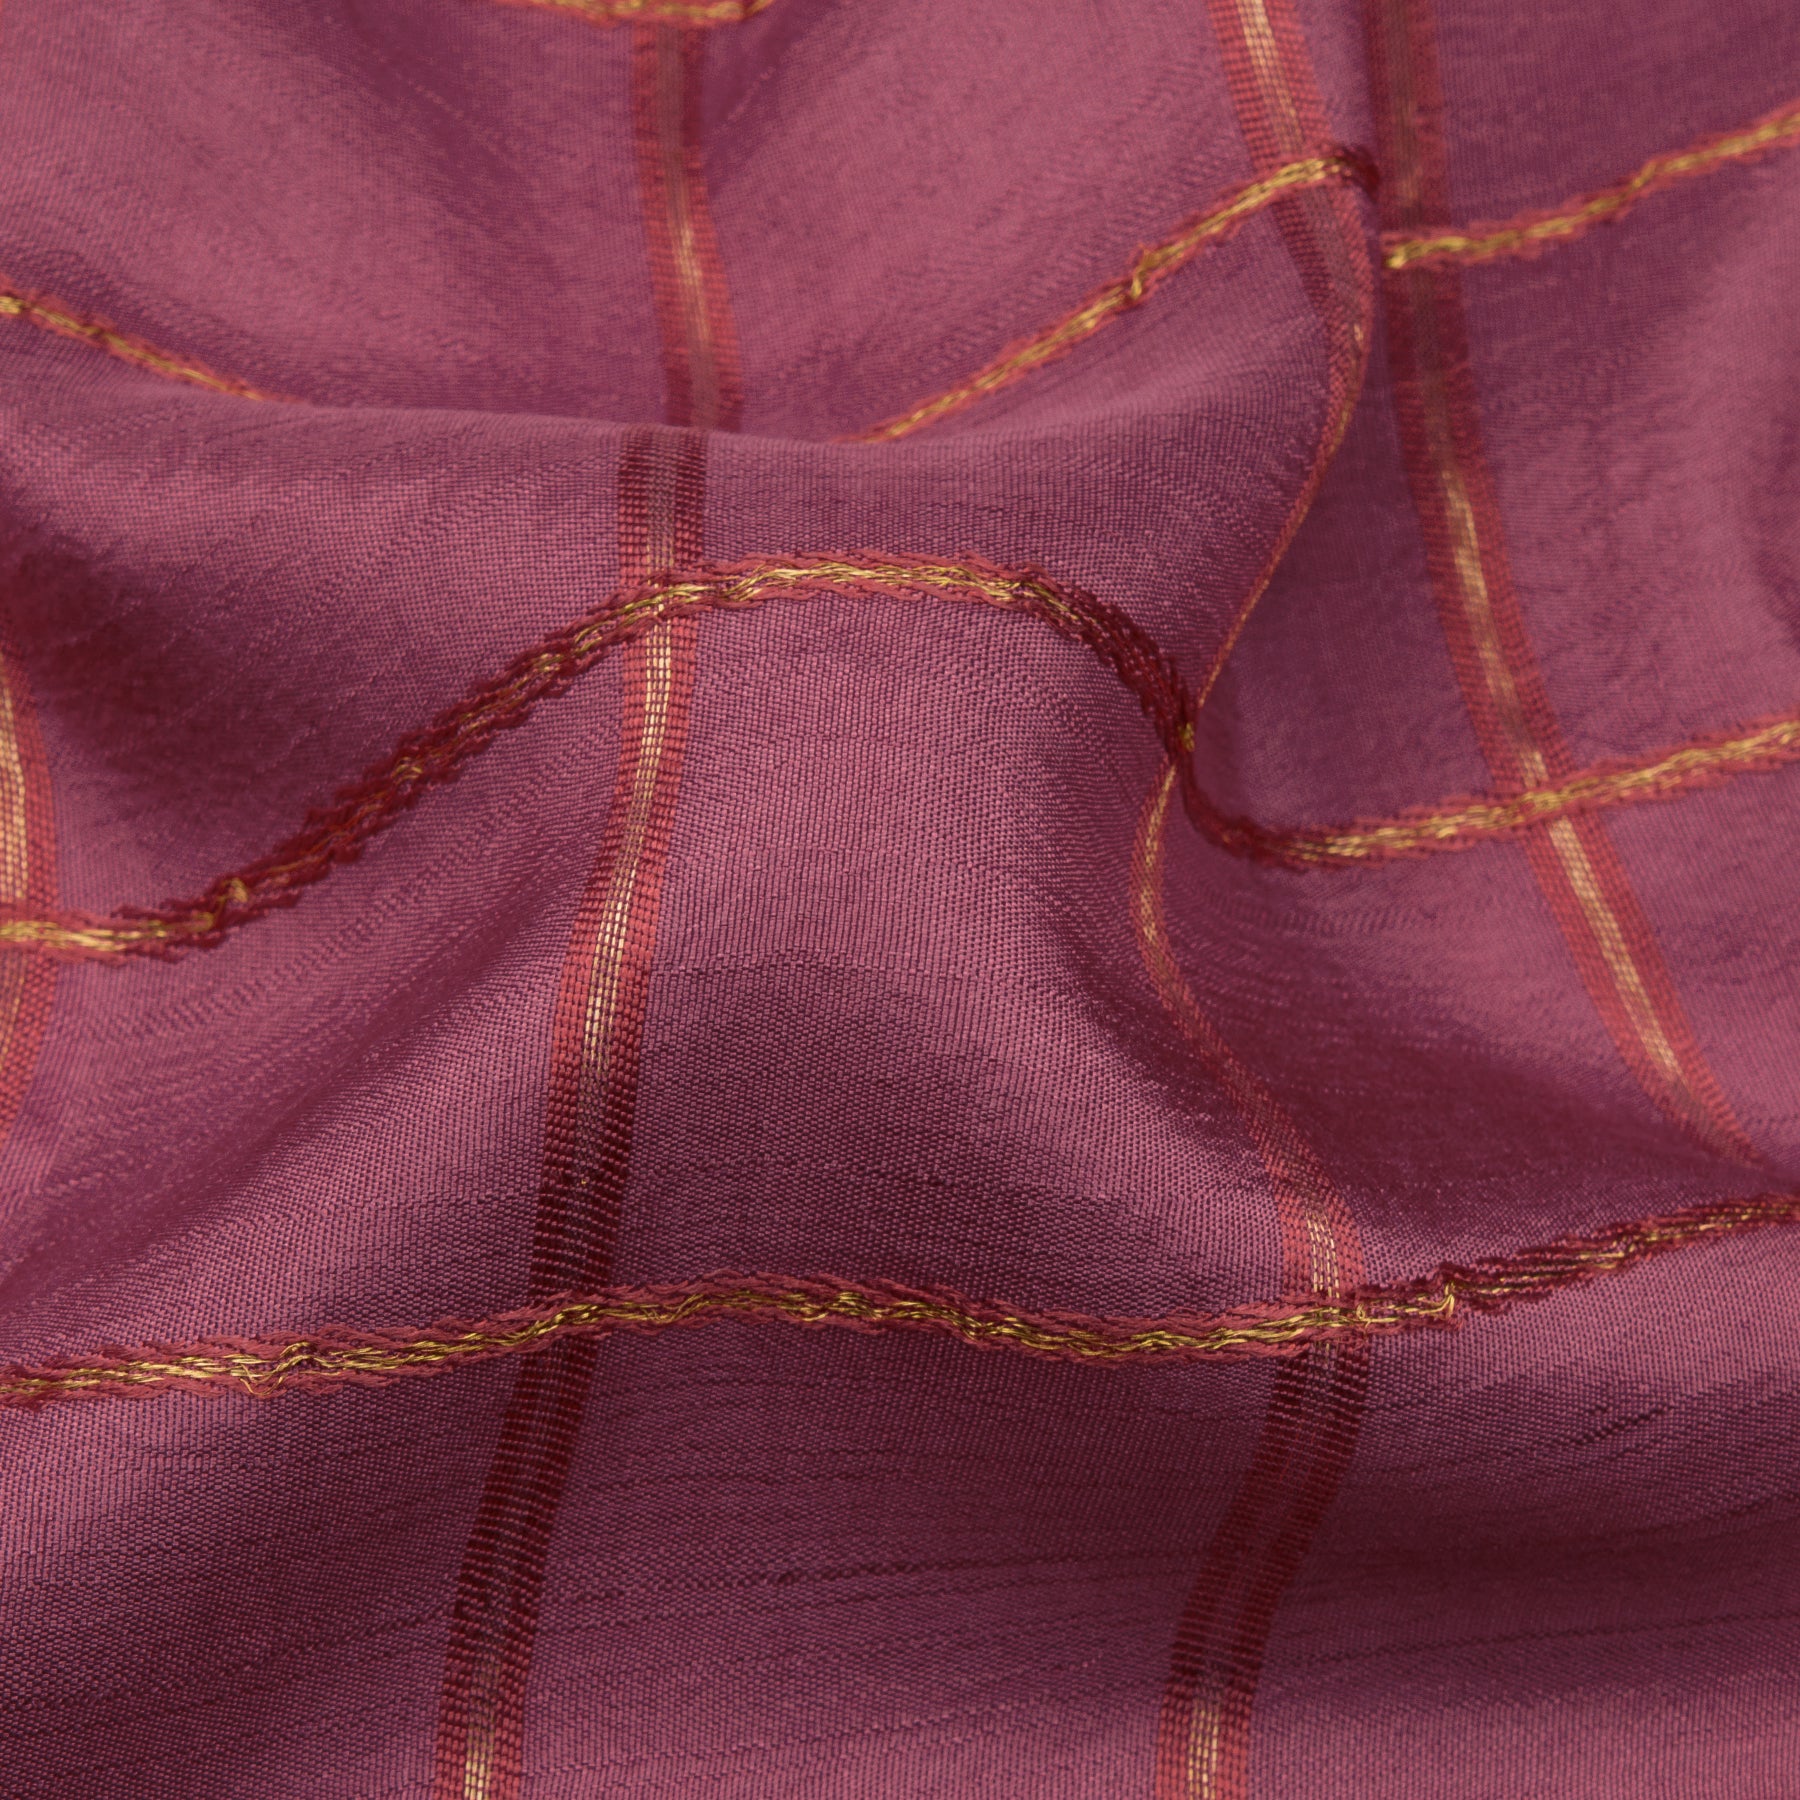 Kanakavalli Kanjivaram Silk Sari 21-041-HS001-08103 - Fabric View